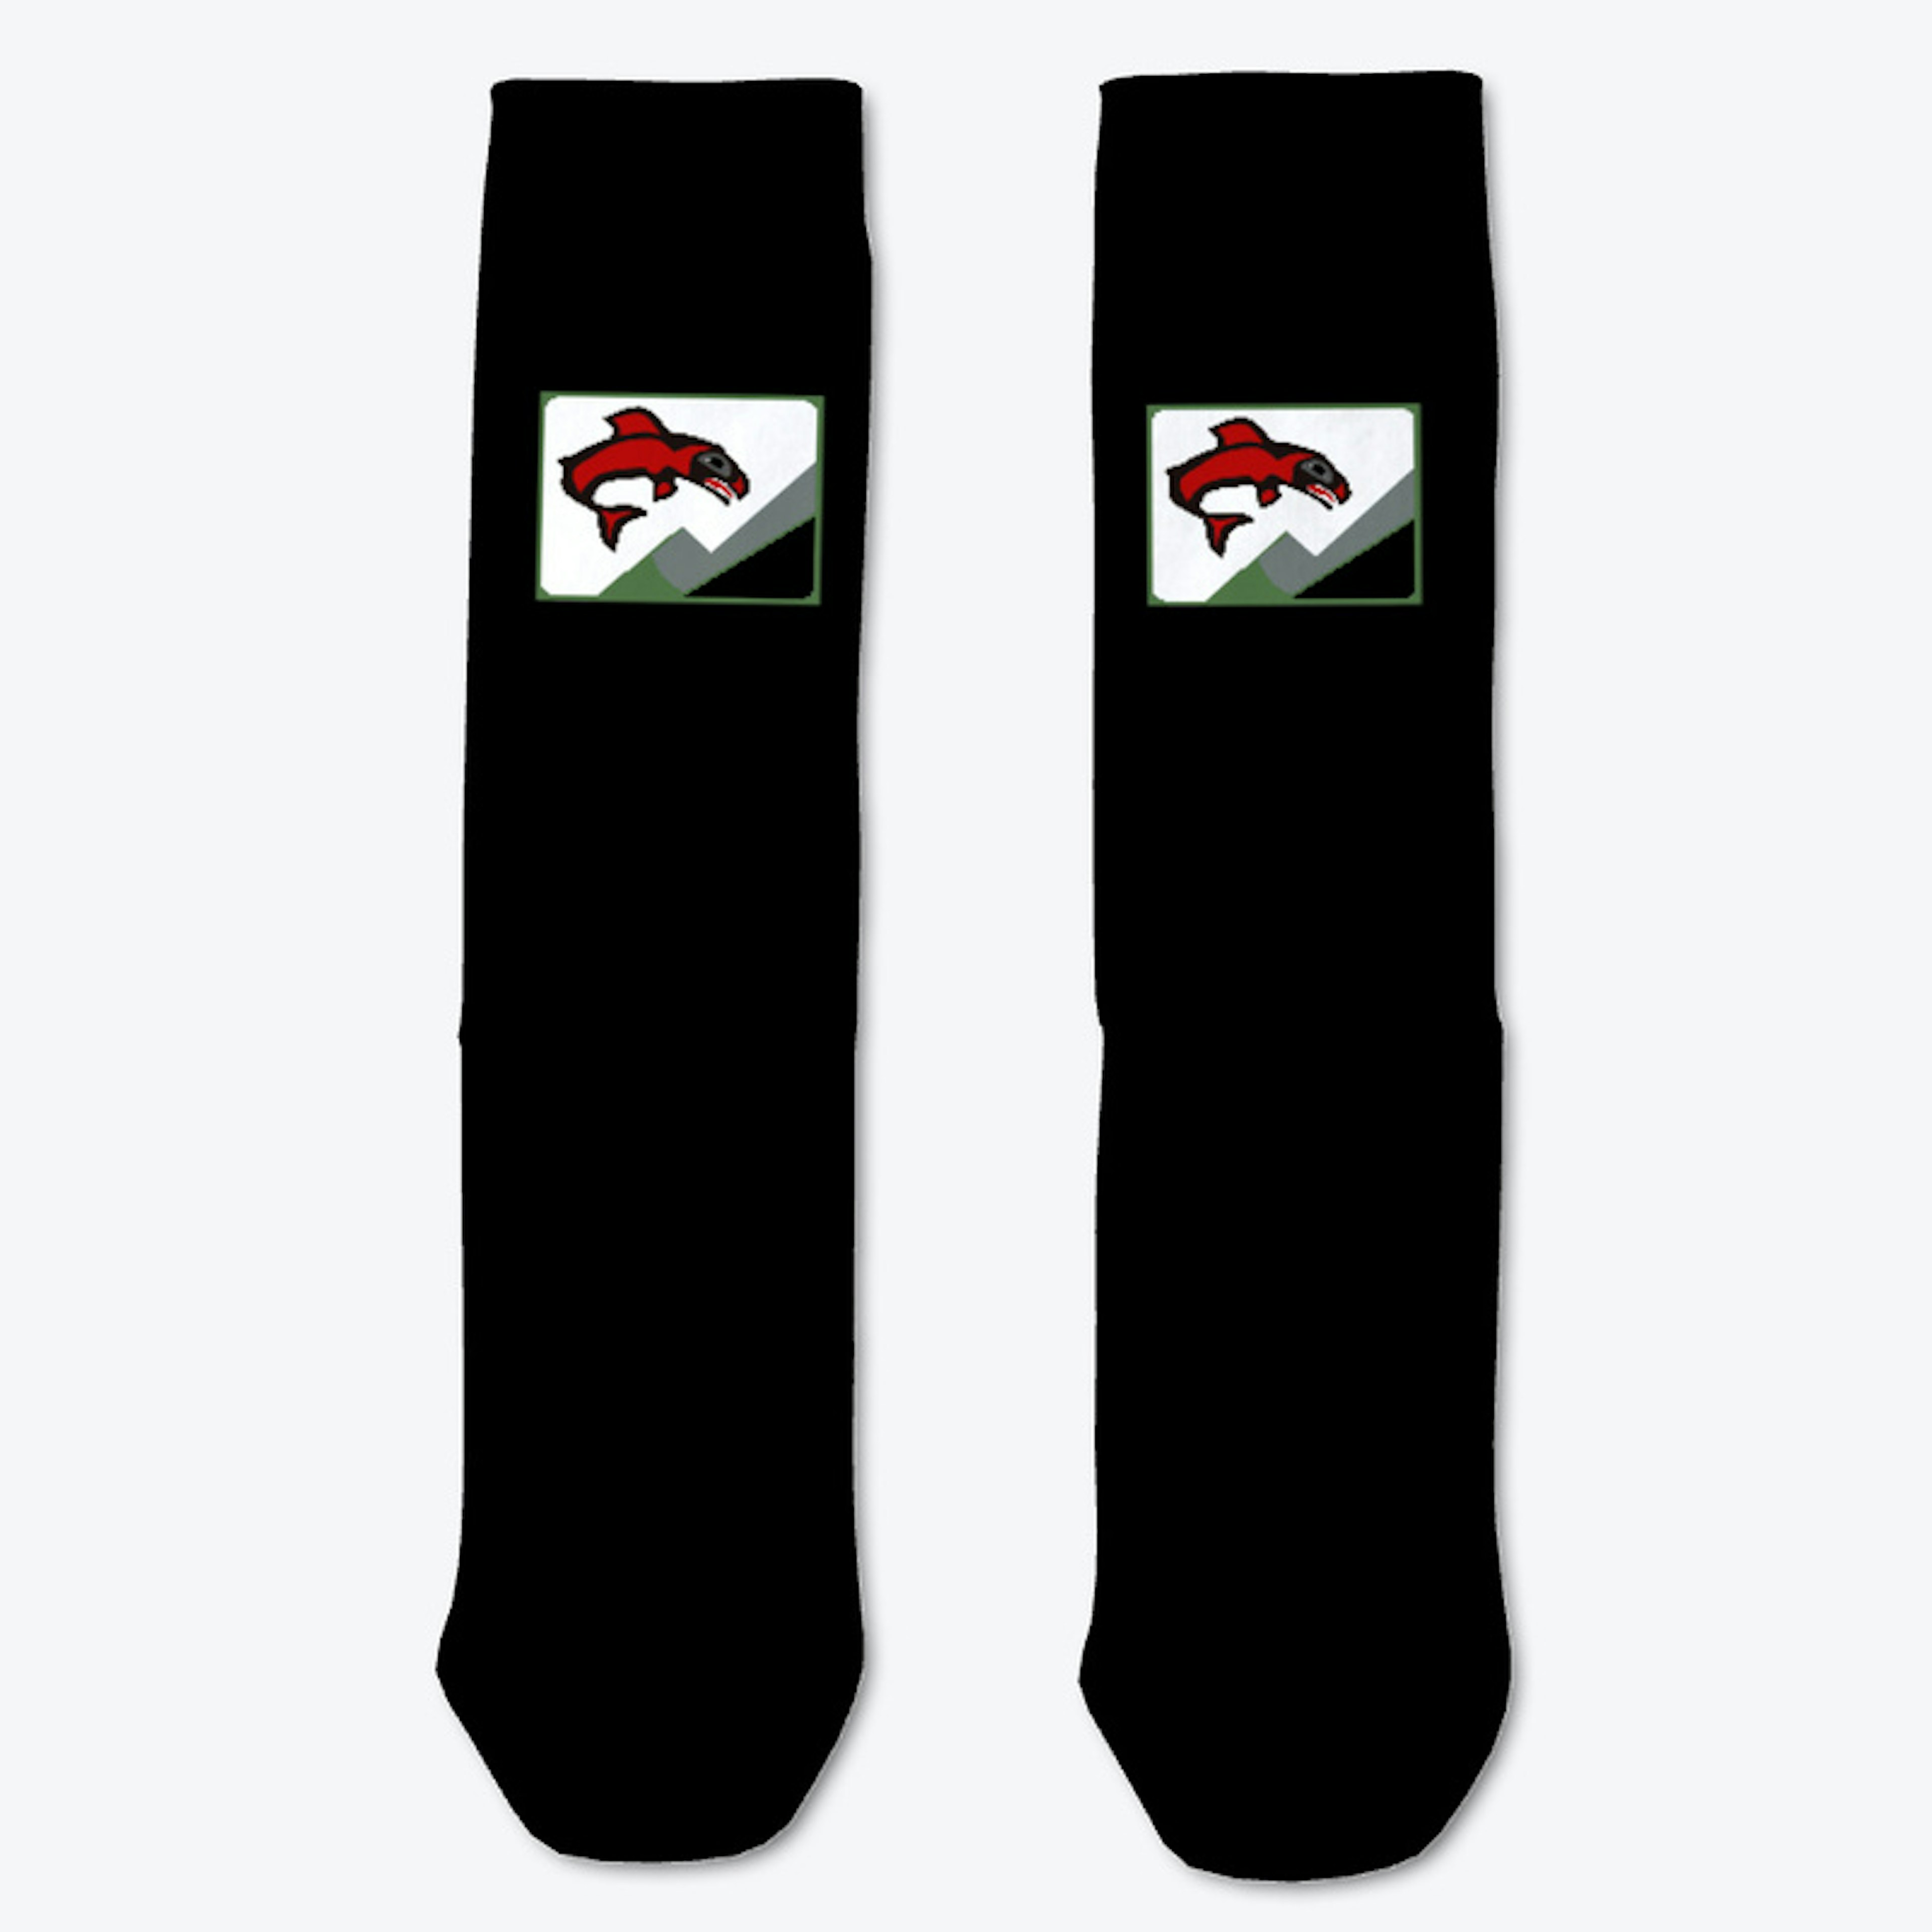 Black Socks with Green/White logo